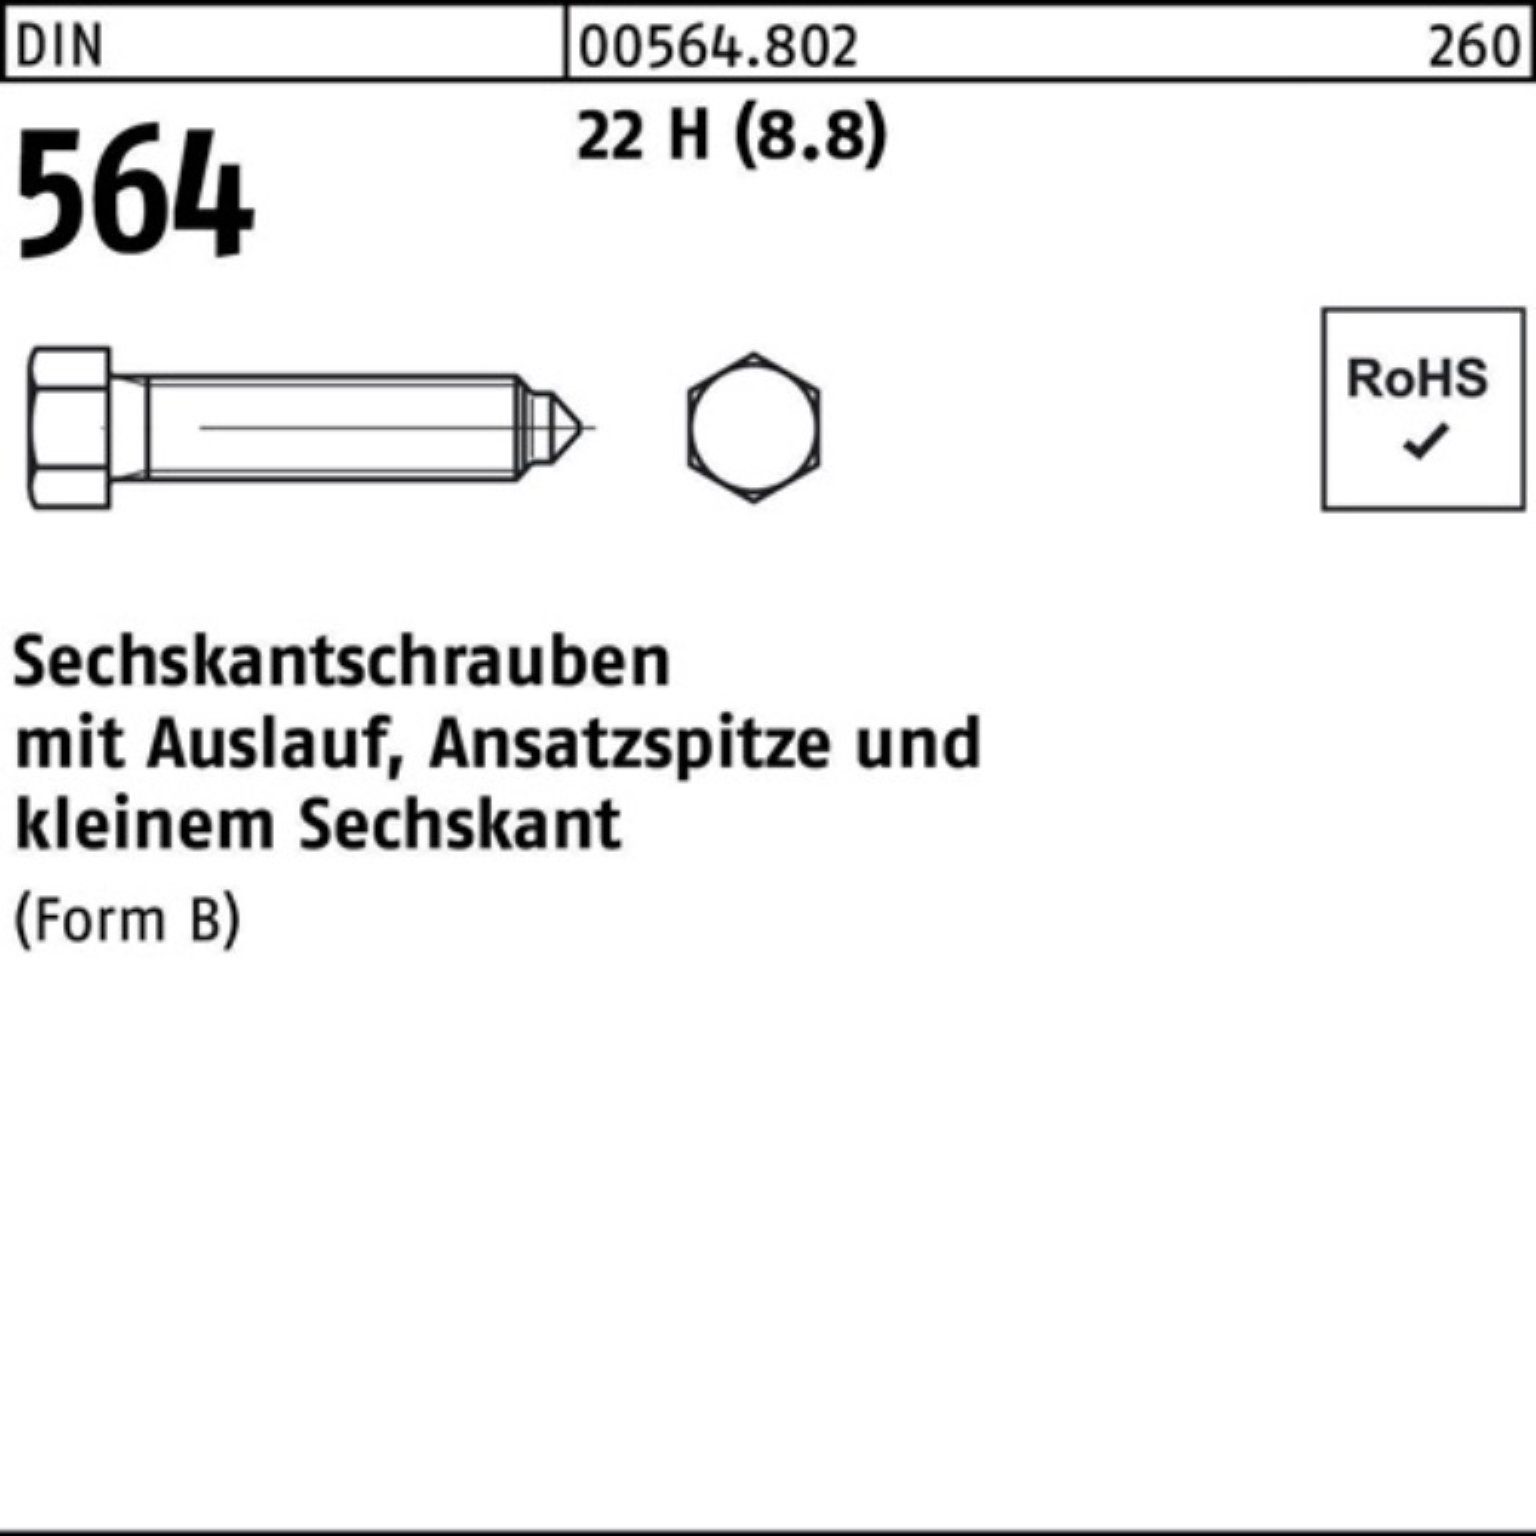 Reyher Sechskantschraube 100er Pack Sechskantschraube DIN 564 Ansatzspitze/Auslauf BM 20x 90 22